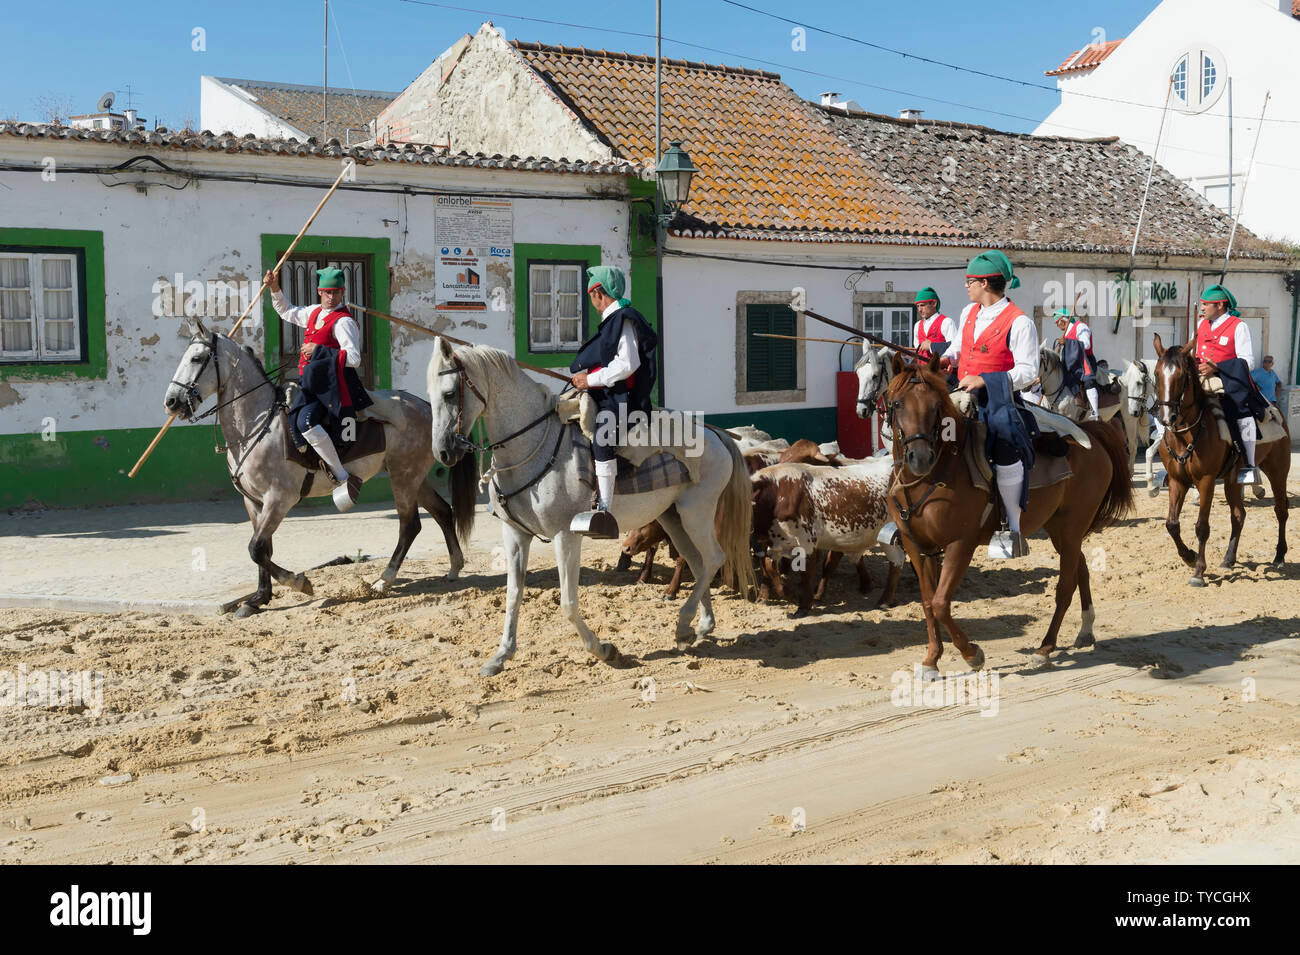 Parade of Horsemen and bulls in the streets, Festas do Barrete Verde e das Salinas, Alcochete, Setubal Province, Portugal Stock Photo